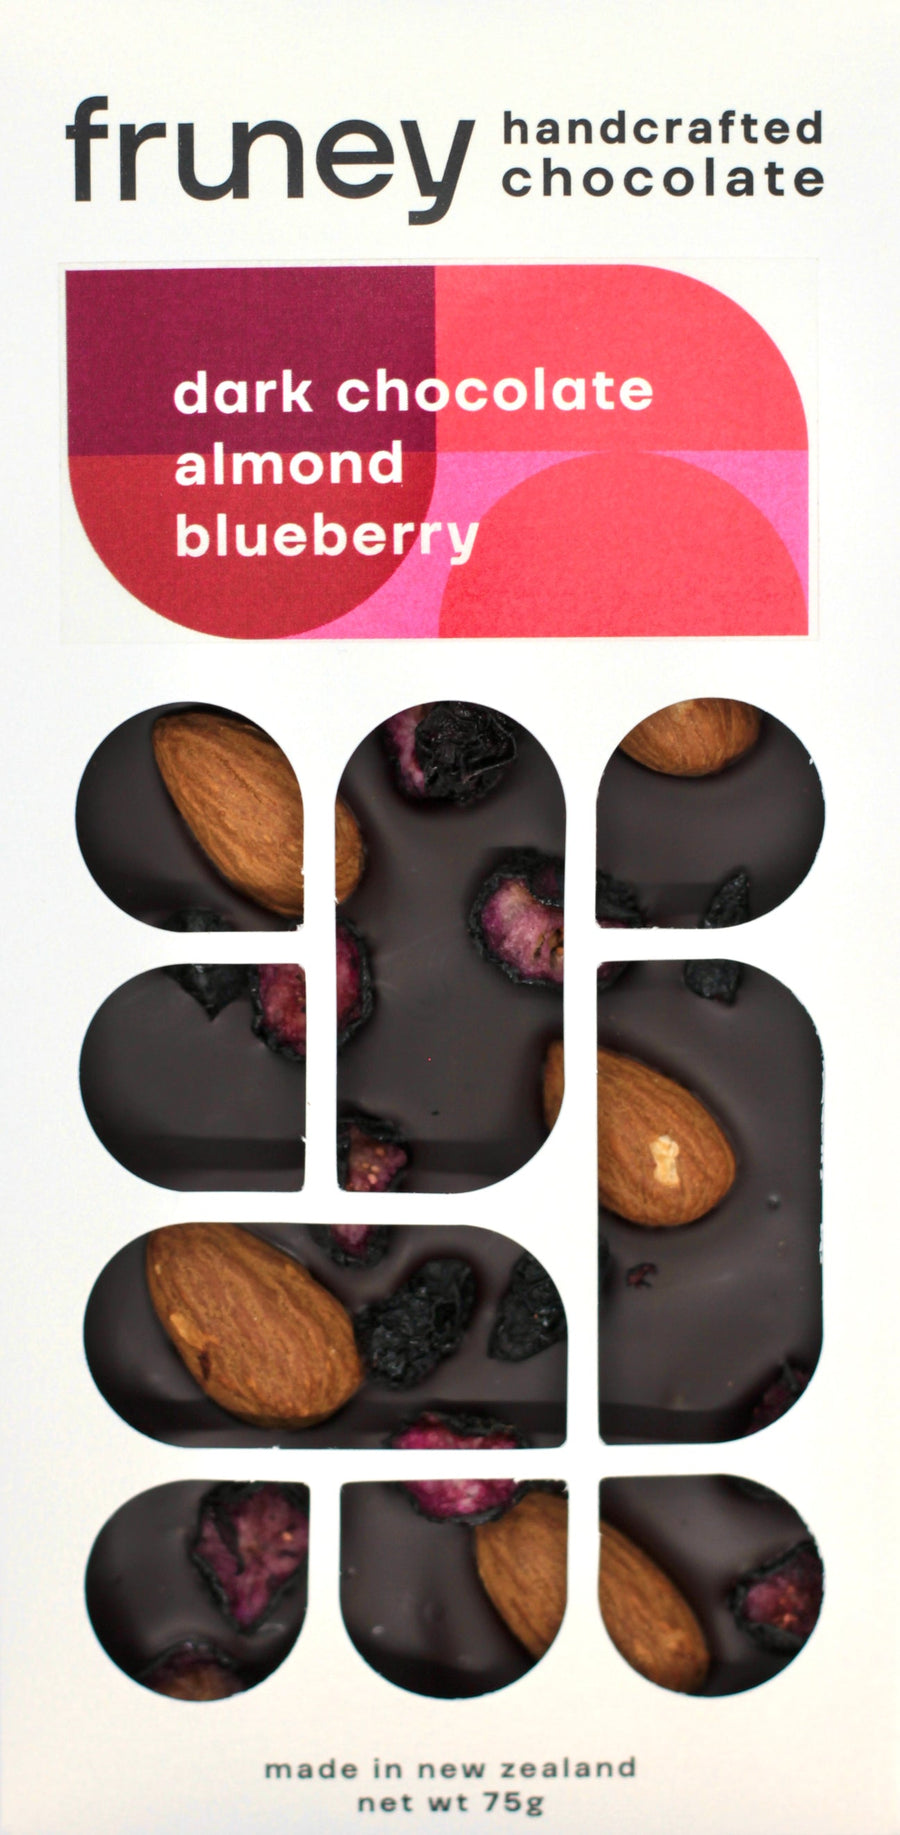 Fruney Dark chocolate almond blueberry